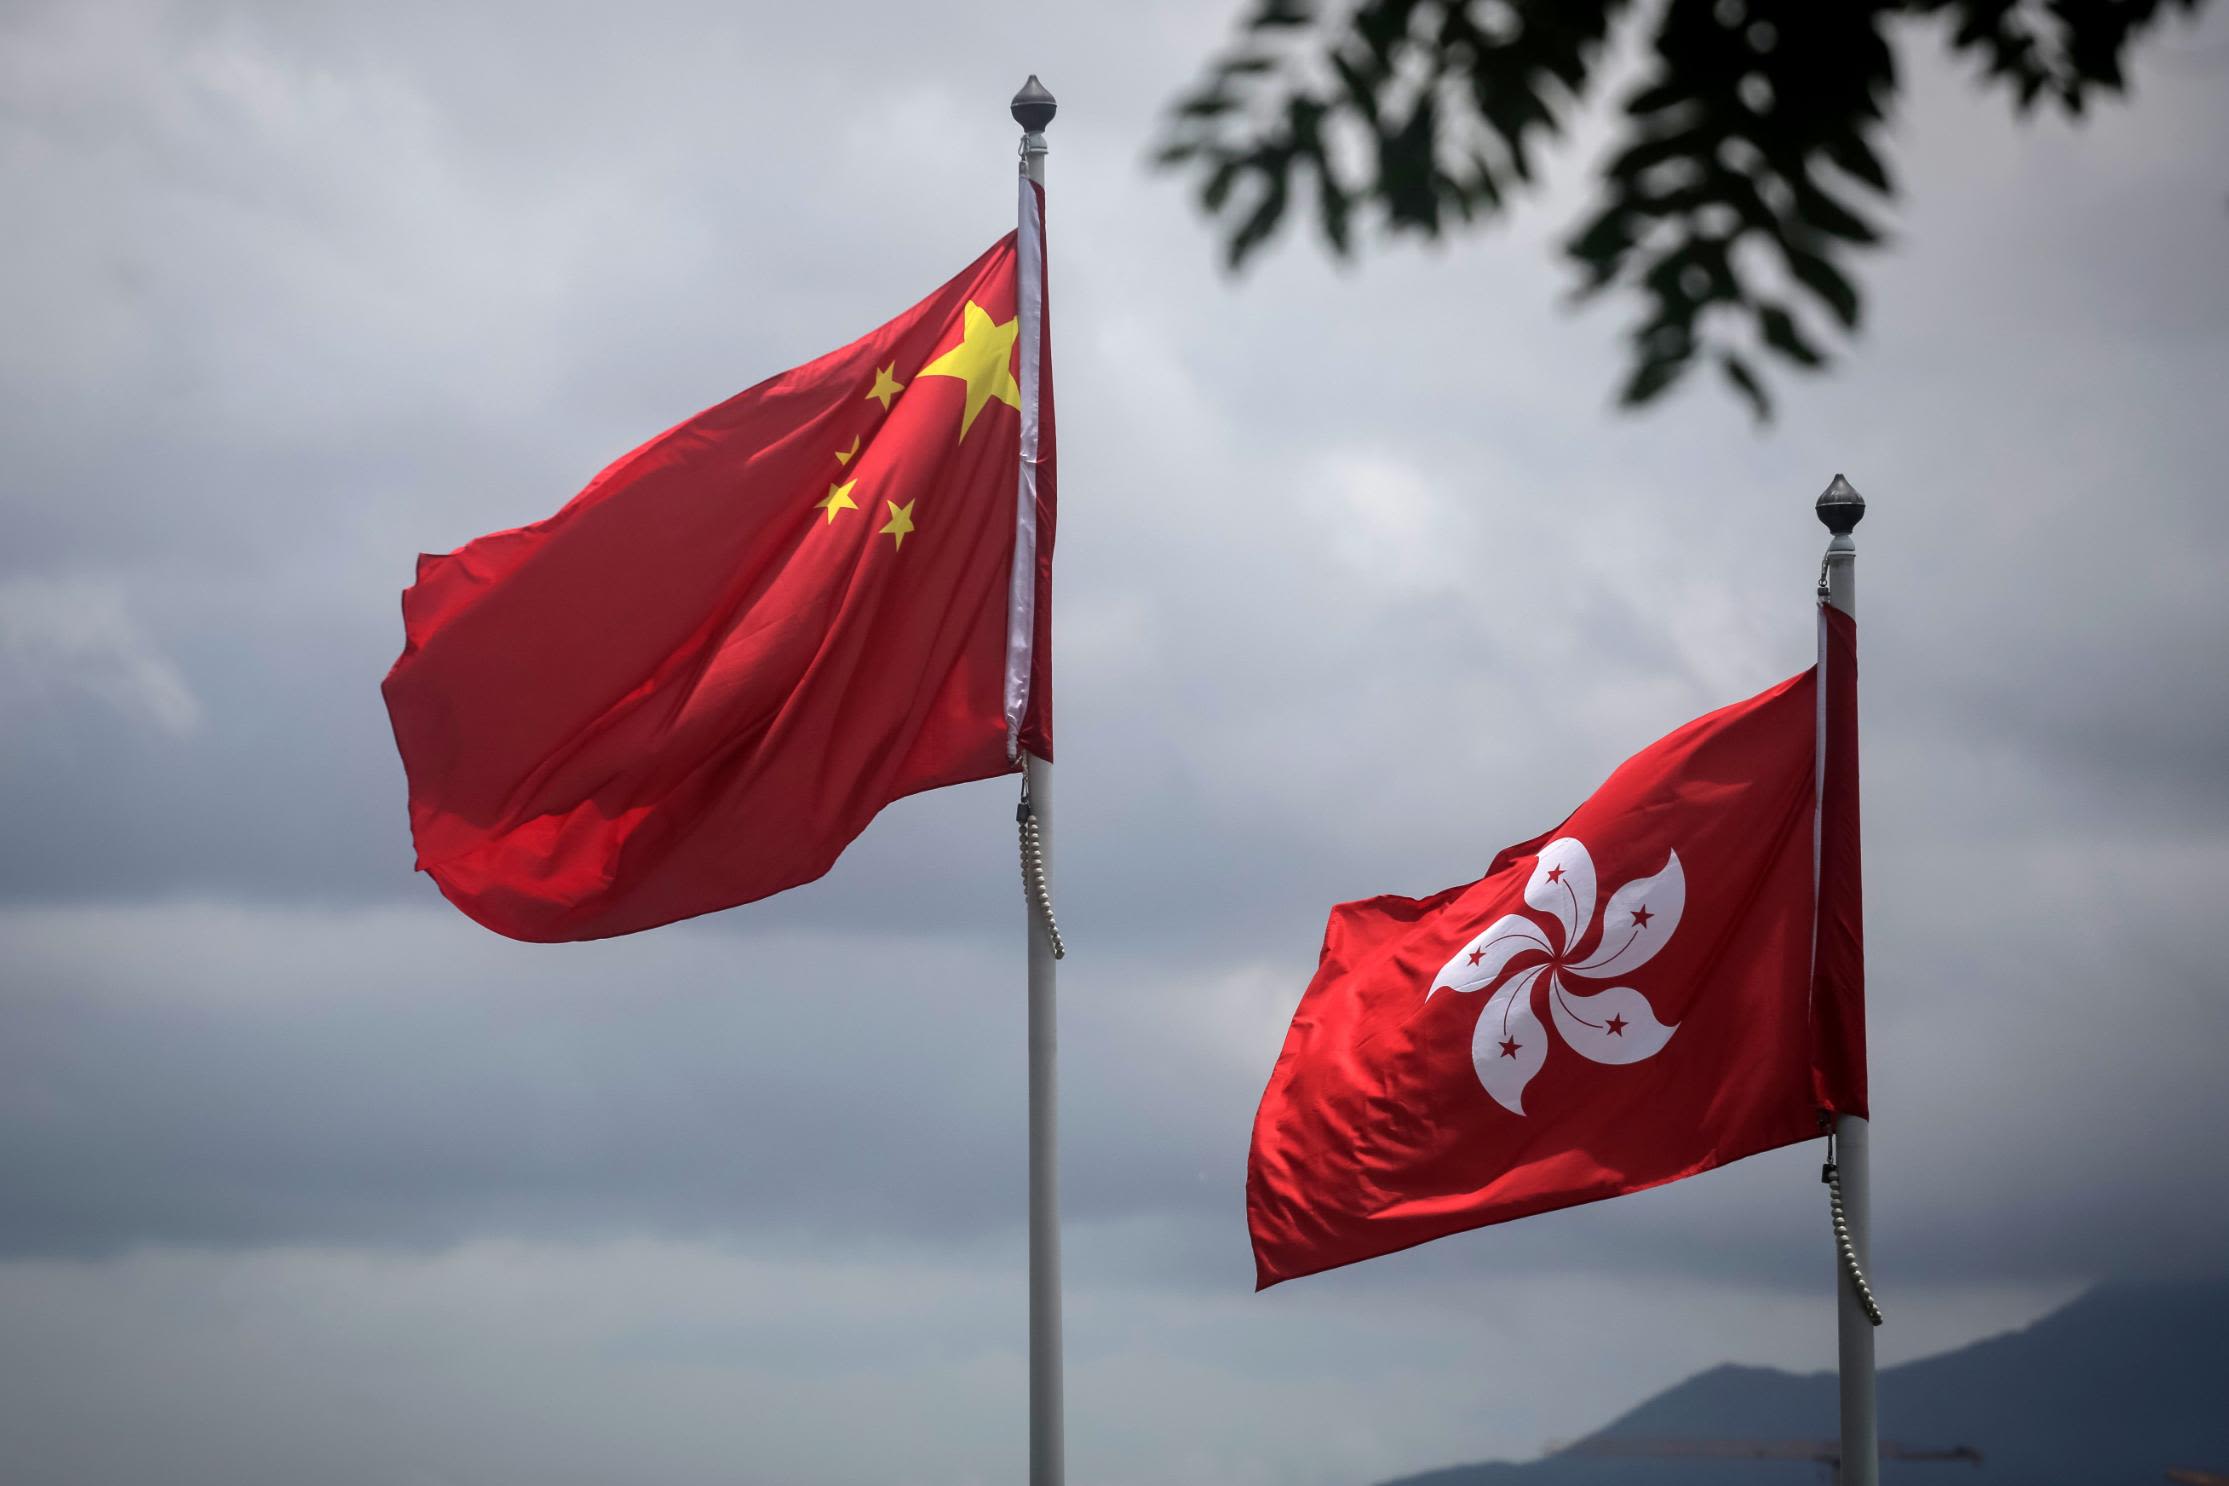 kontrol Stjerne kit Hong Kong's flag: How the bauhinia flower became the target of protest | CNN